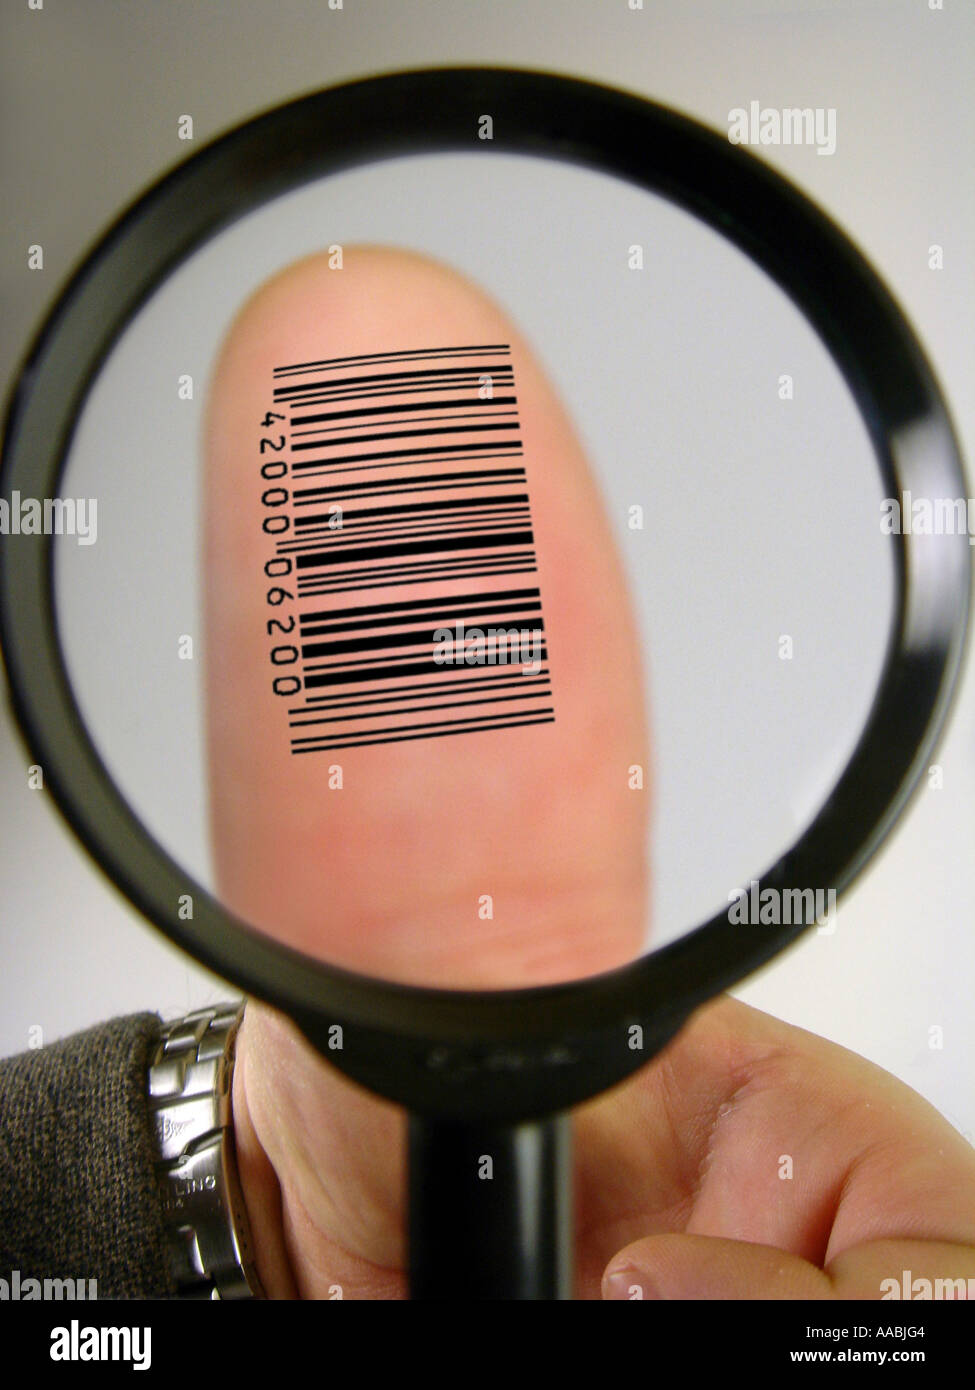 digital fingerprint Stock Photo